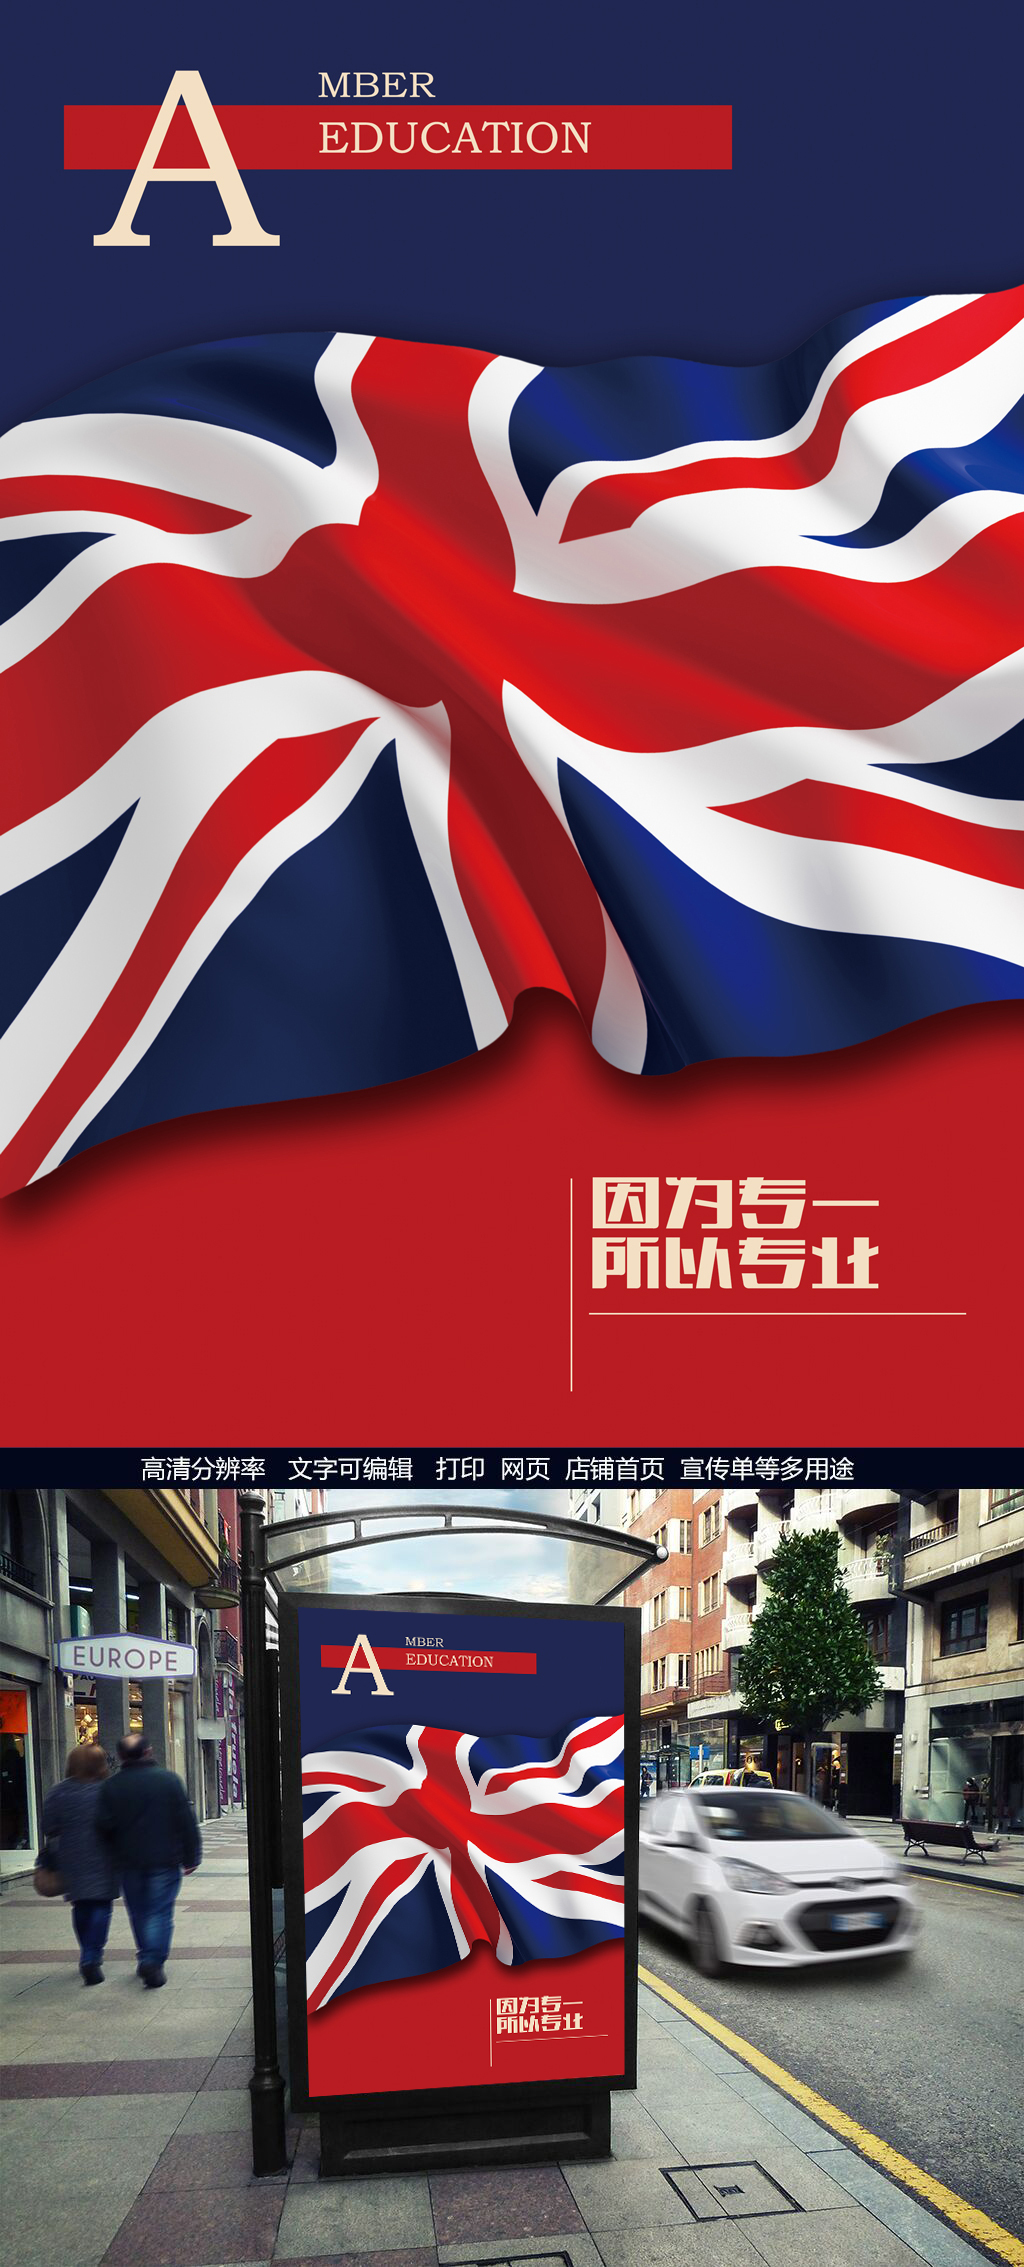 英国国旗宣传海报图片设计素材_高清PSD模板下载(16.99MB)QQ3987D806分享_节日设计大全